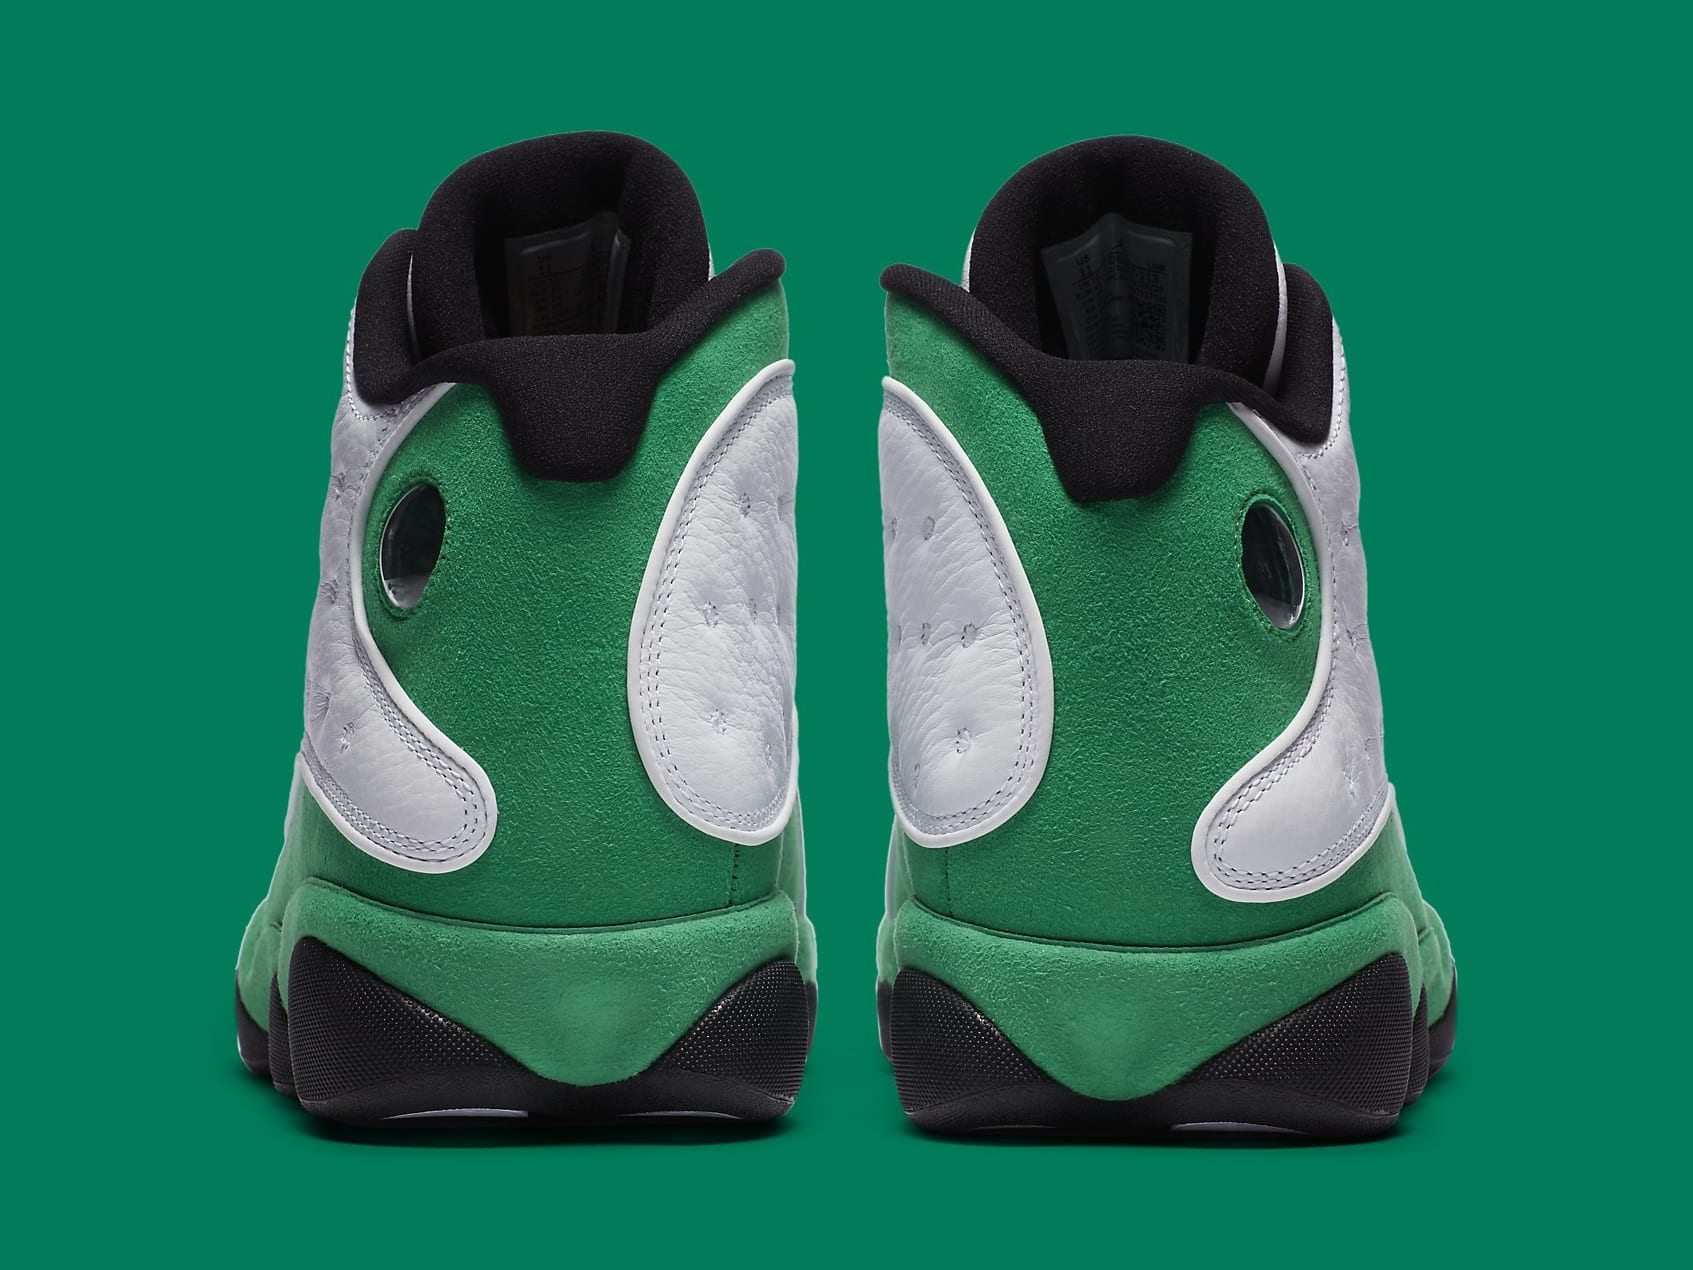 Jordan 13 Retro White Lucky Green Men's - DB6537-113/414571-113 - US